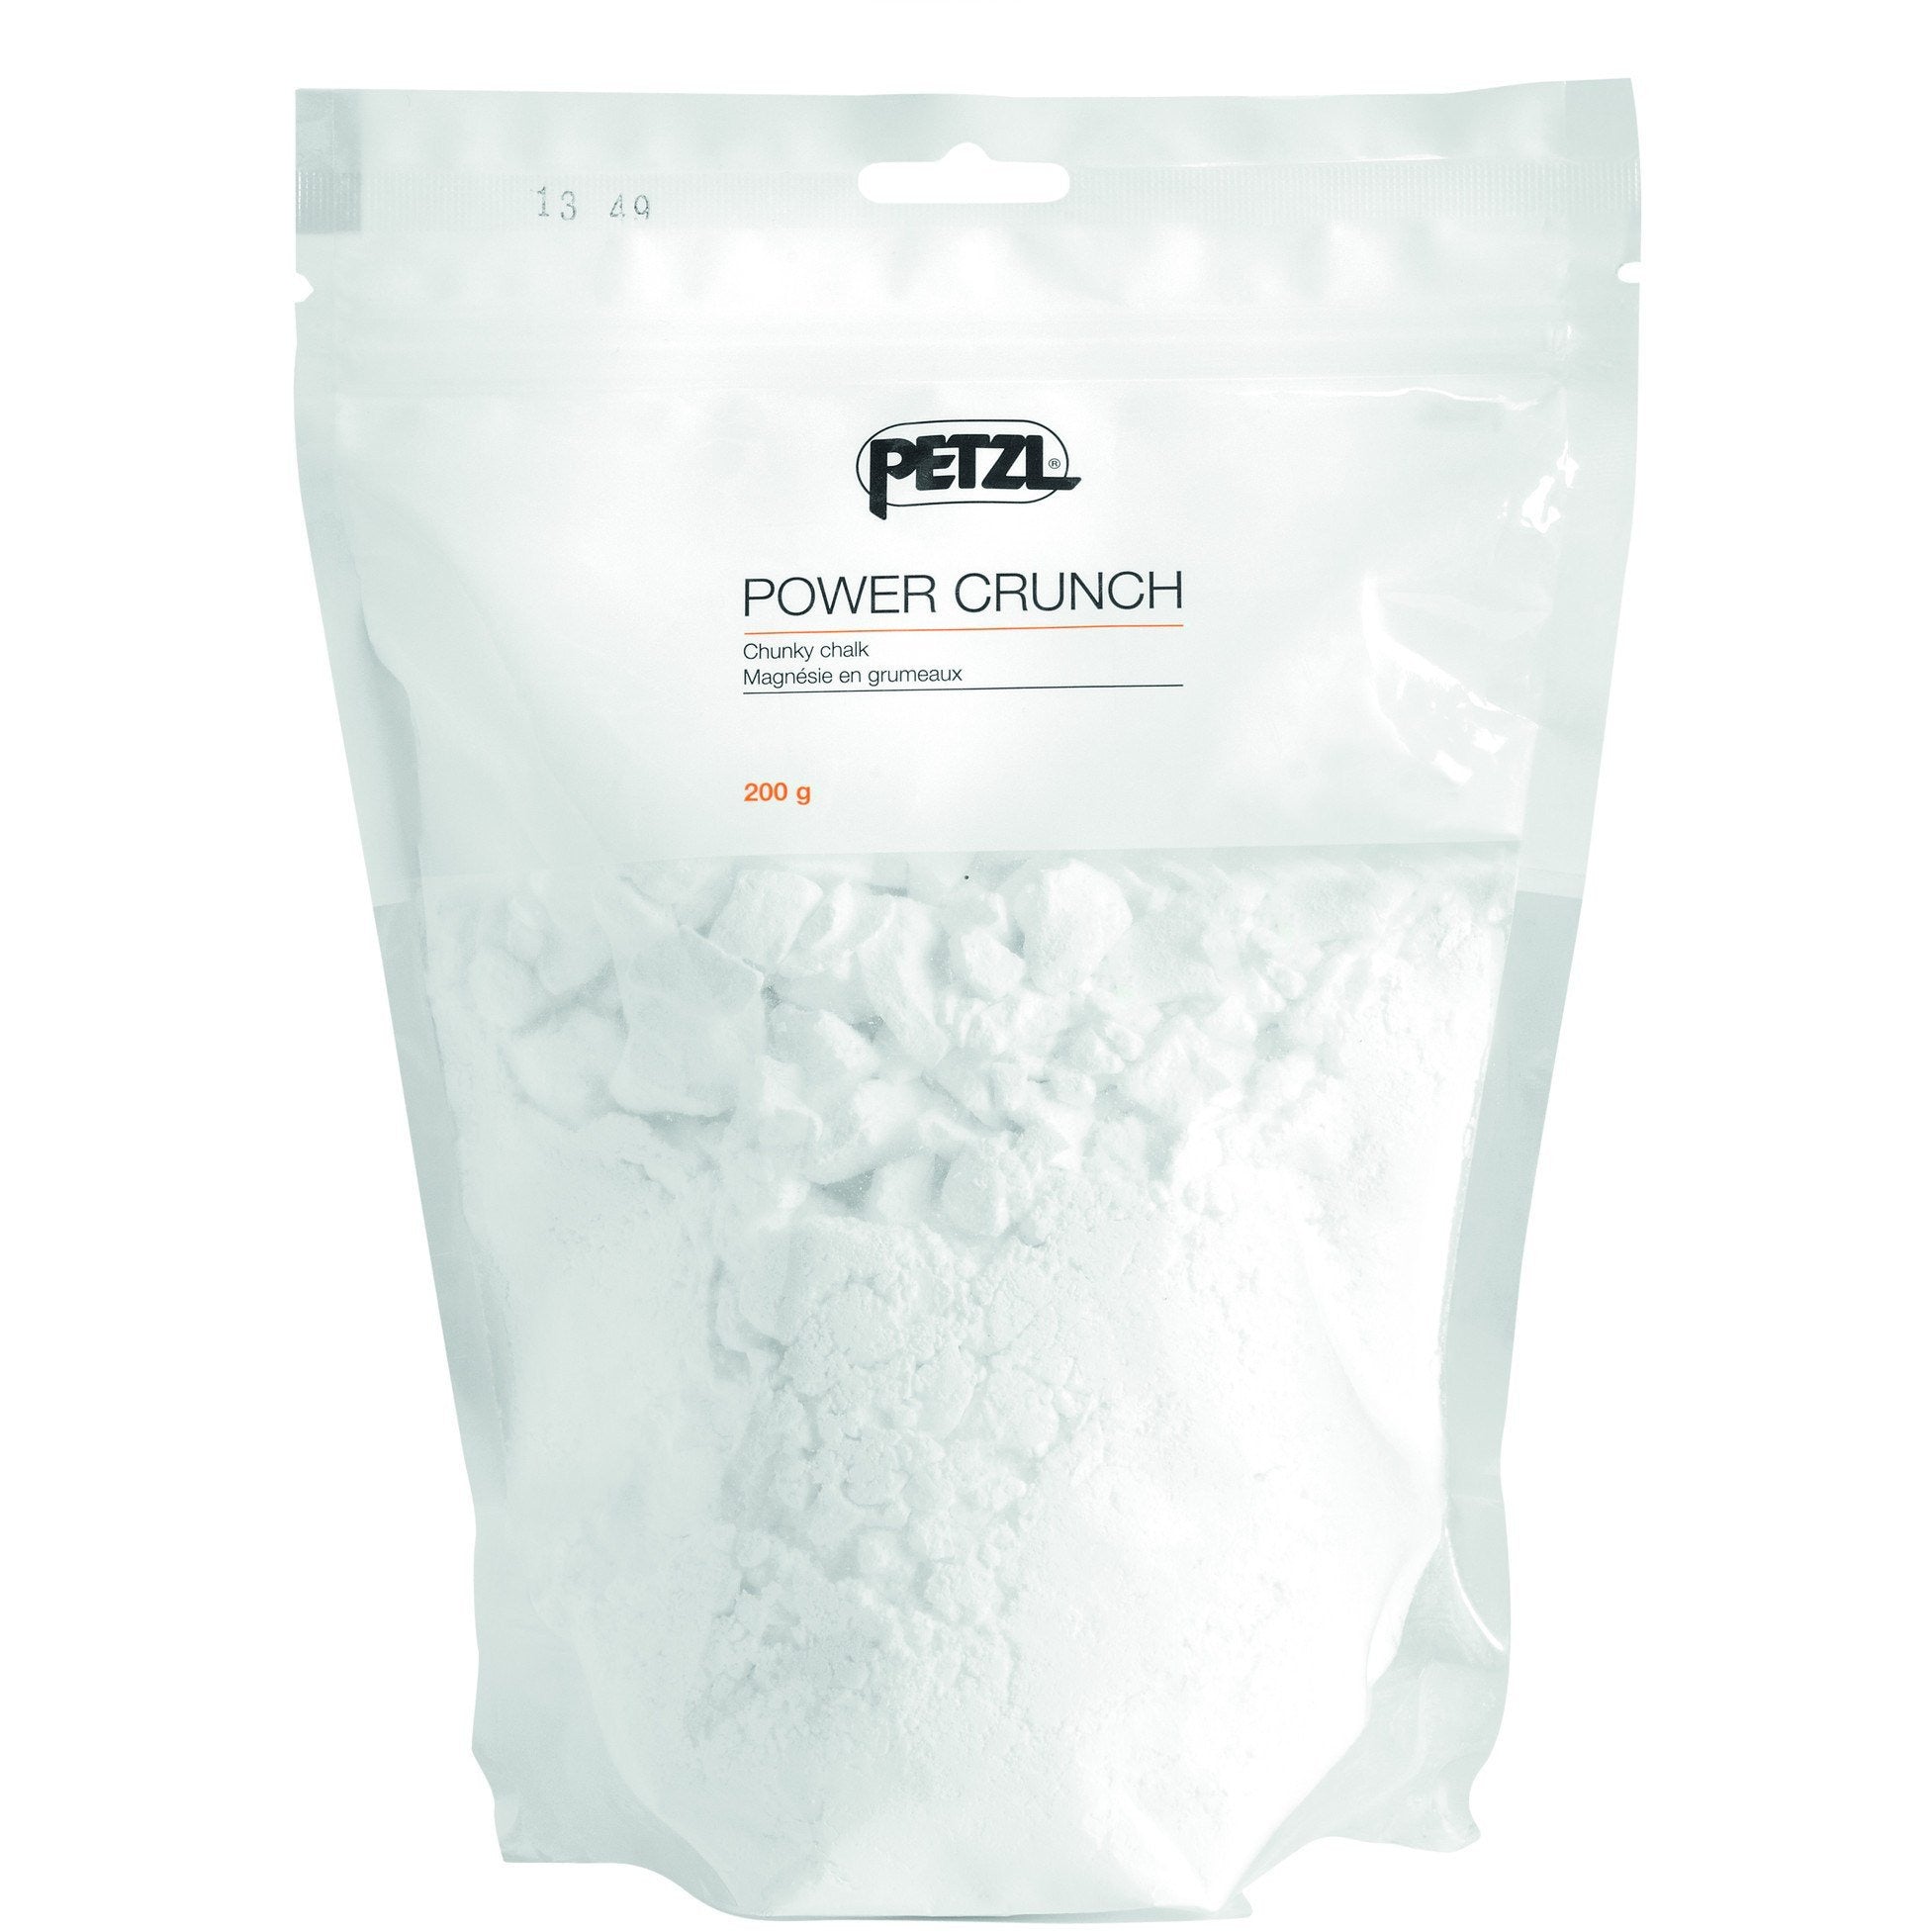 Petzl Power Crunch Chalk - Aerial Adventure Tech